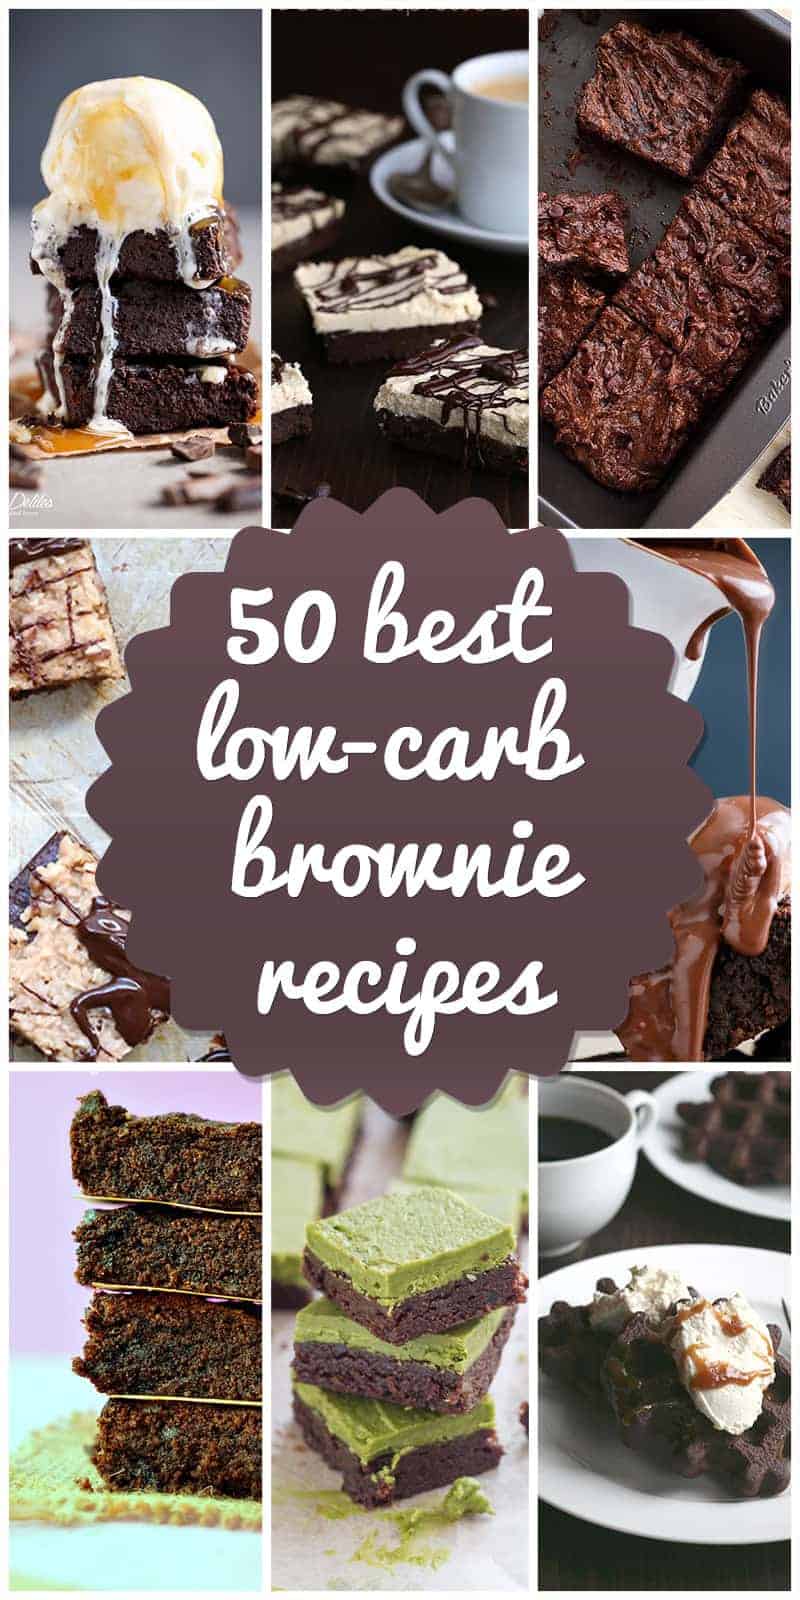 Low-carb brownies